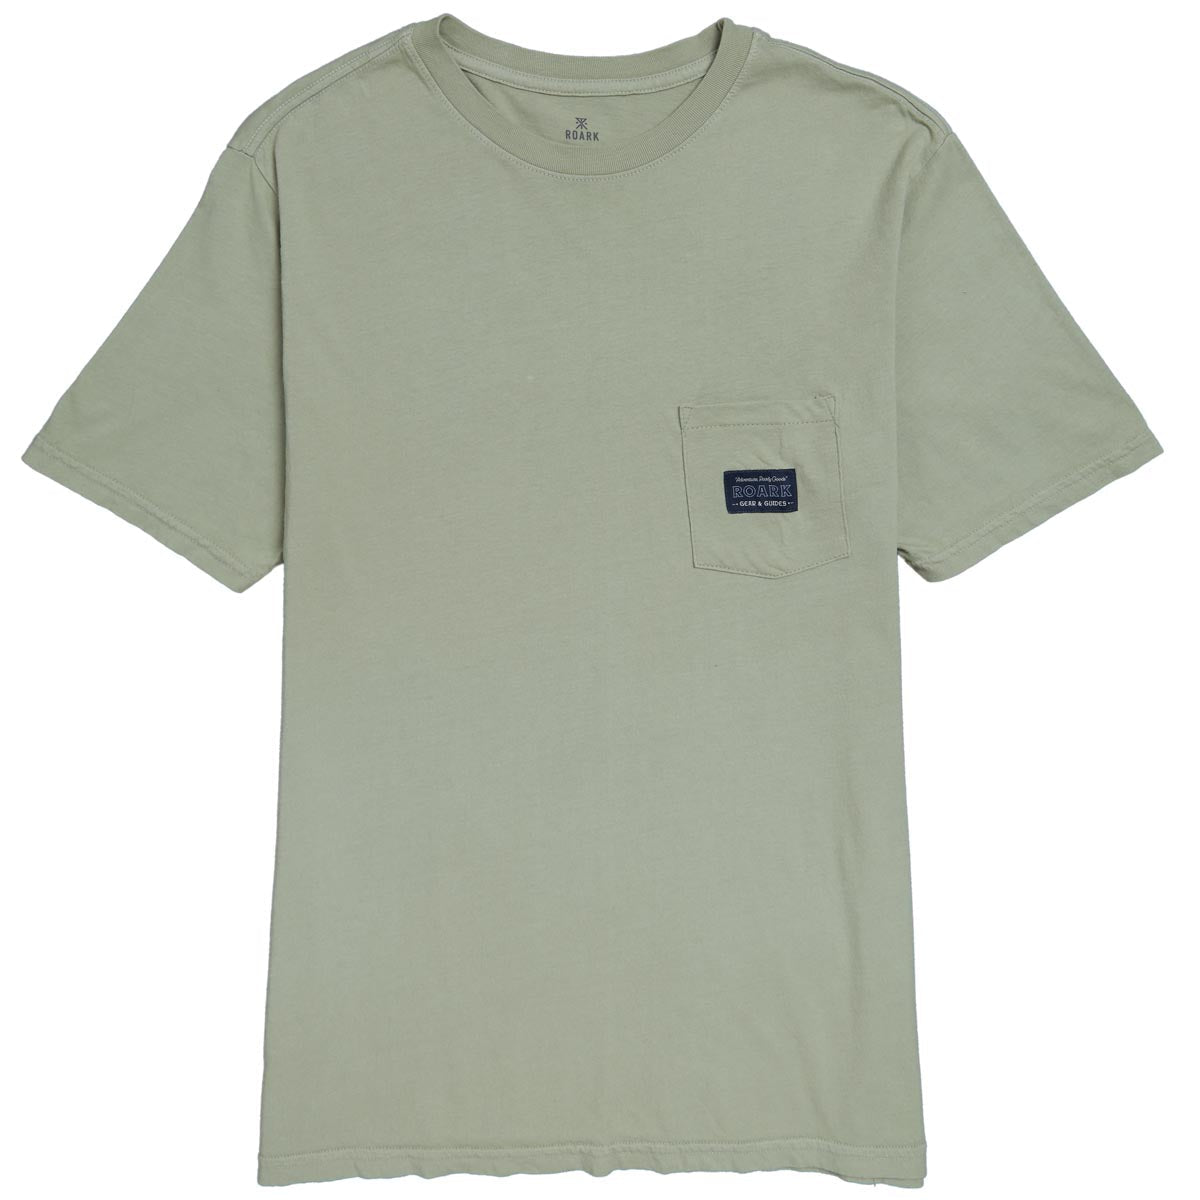 Roark Label Pocket T-Shirt - Chaparral image 1